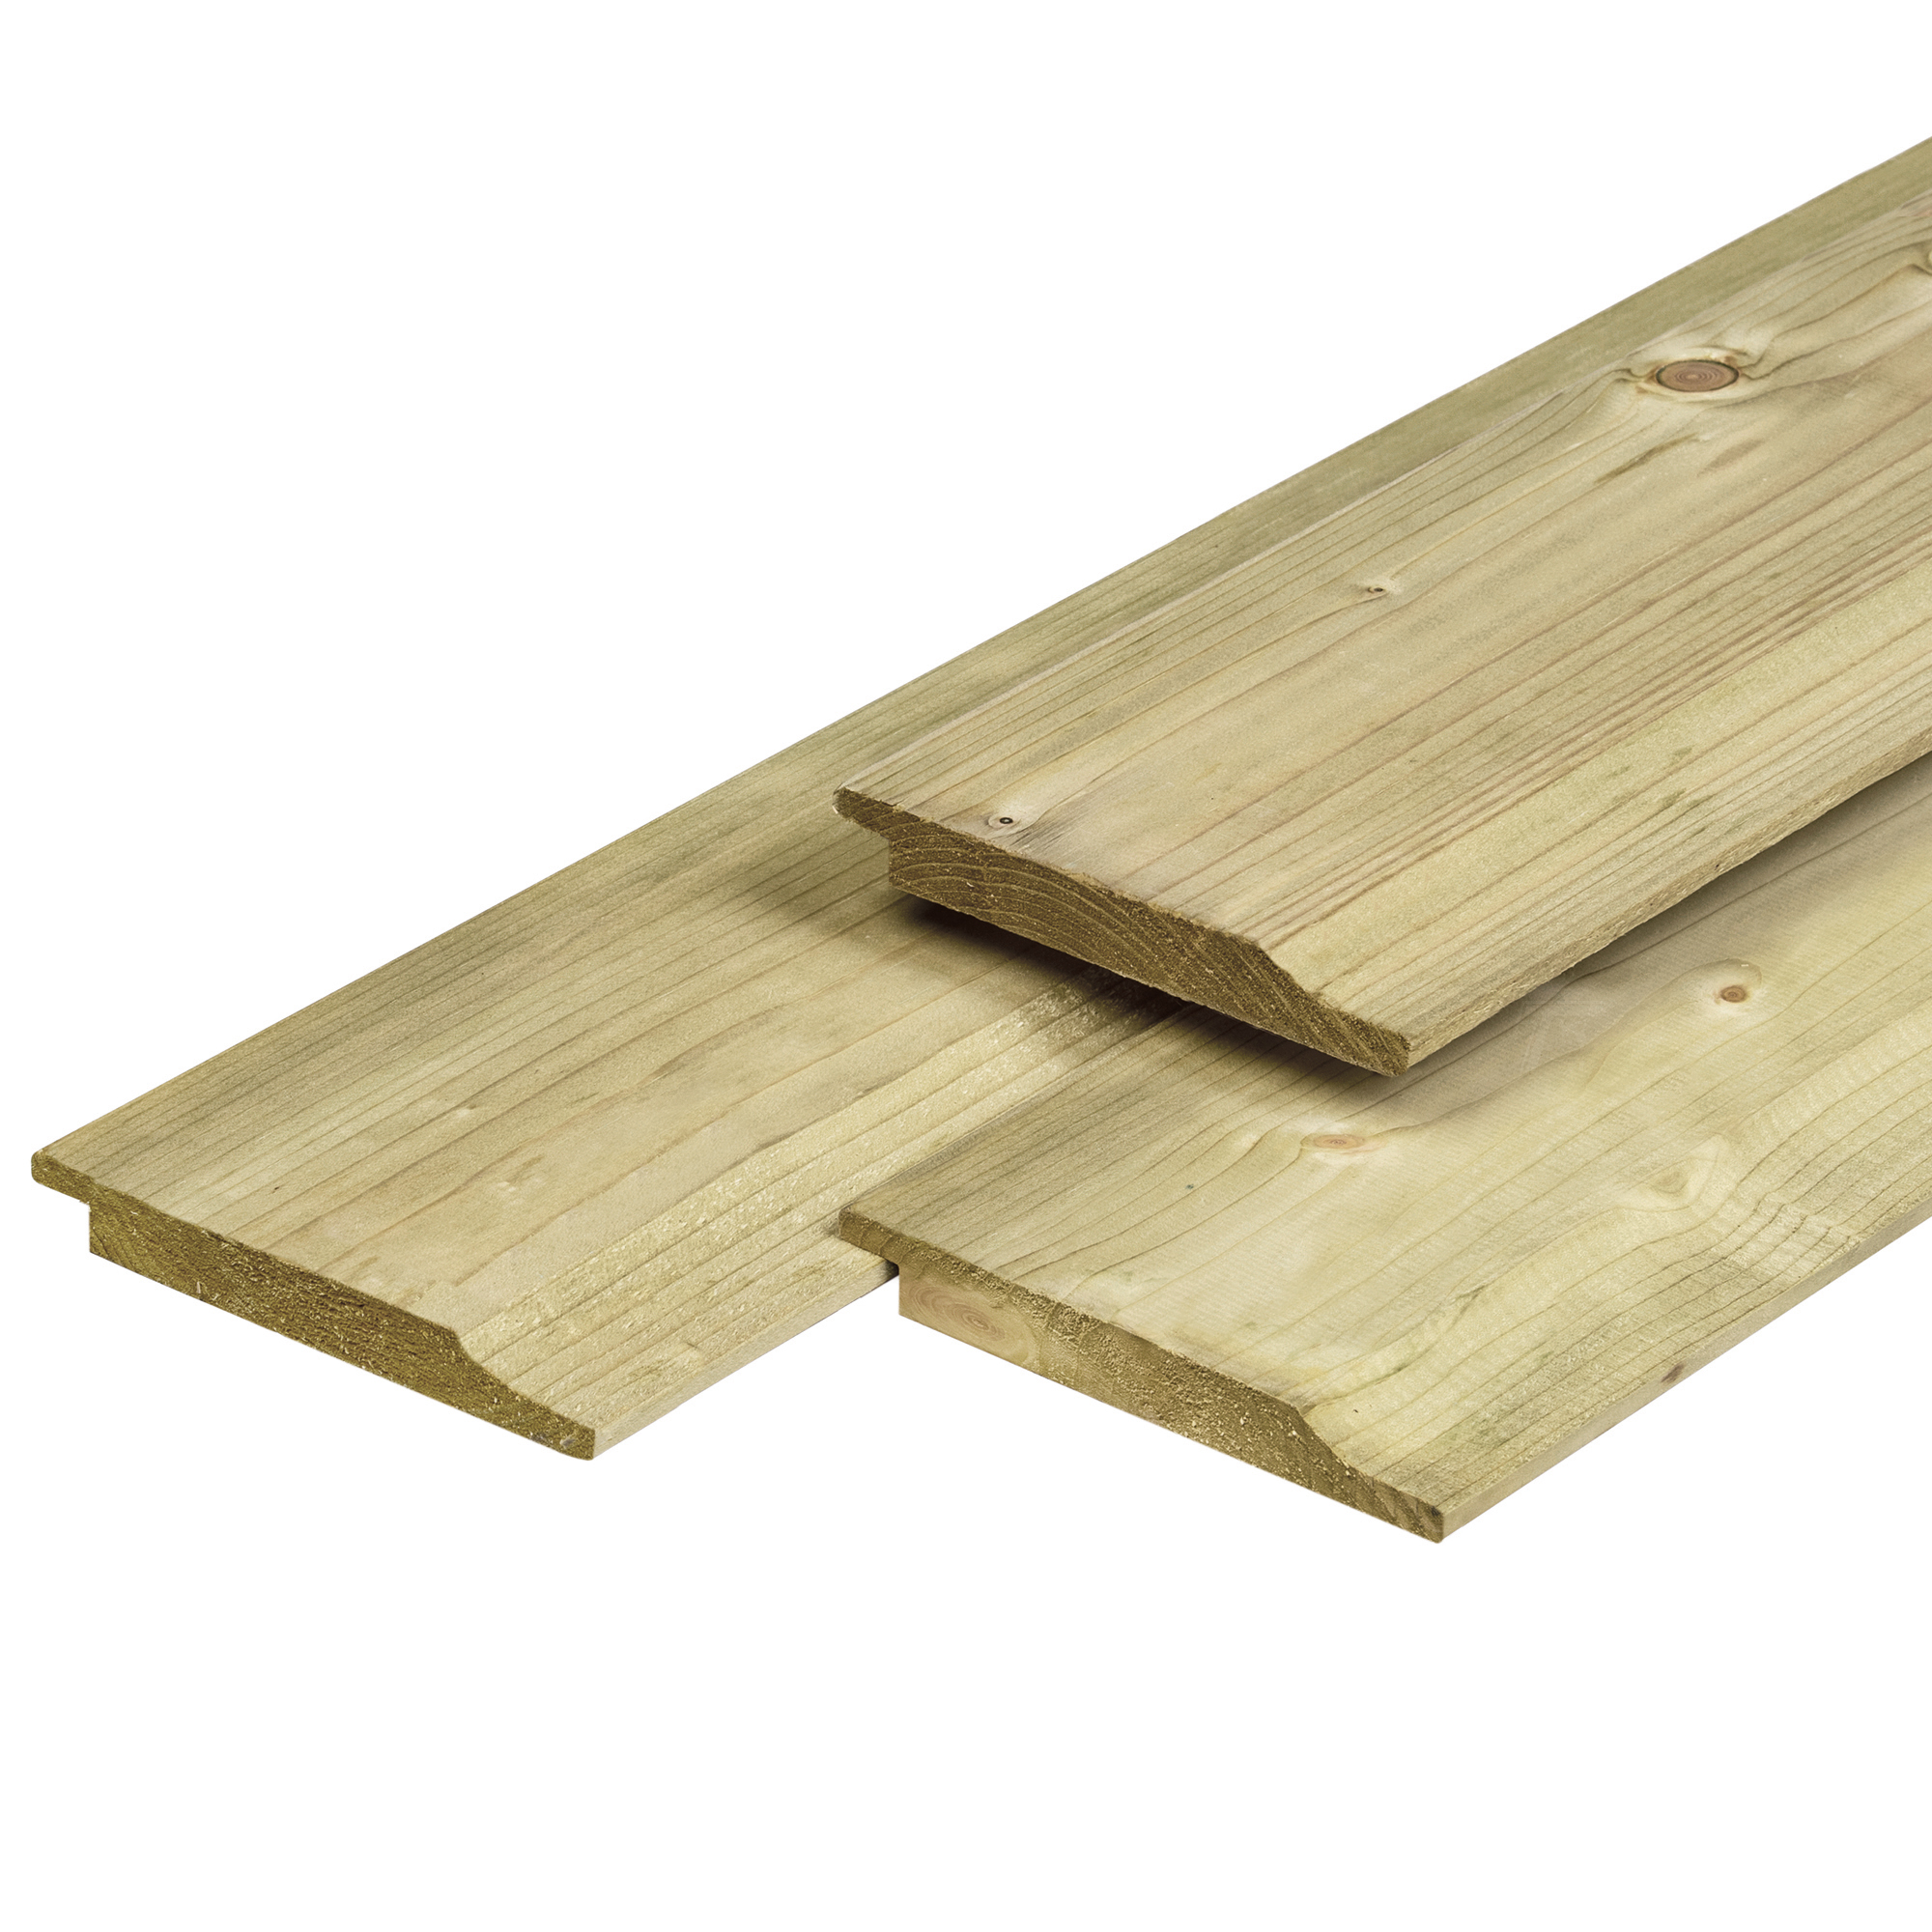 Profilholz mit Wechselfalz aus Nordeuropäische O/S-IV Fichtenholz 1.9x14.5x330cm